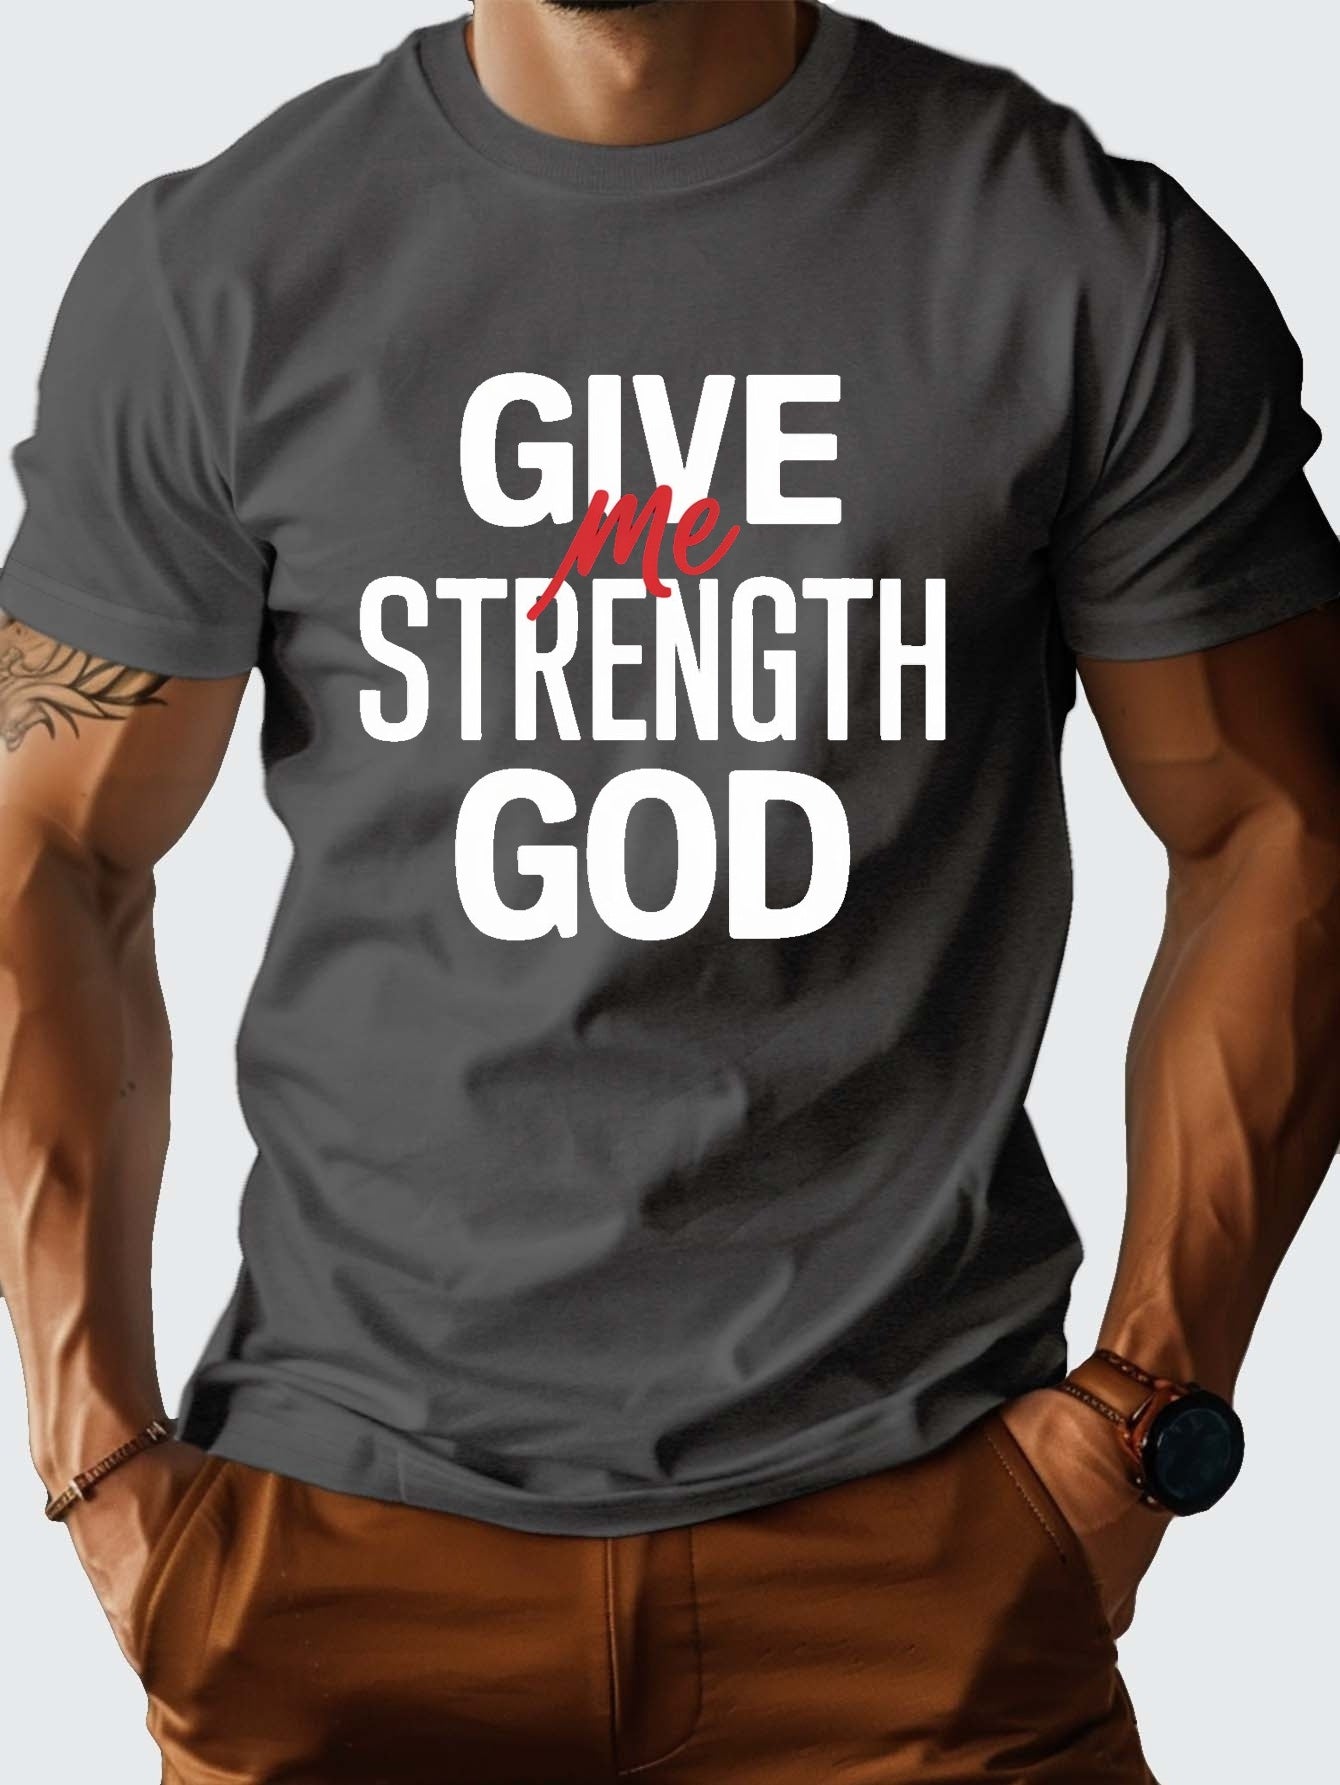 Give Me Strength God Men's Christian T-shirt claimedbygoddesigns